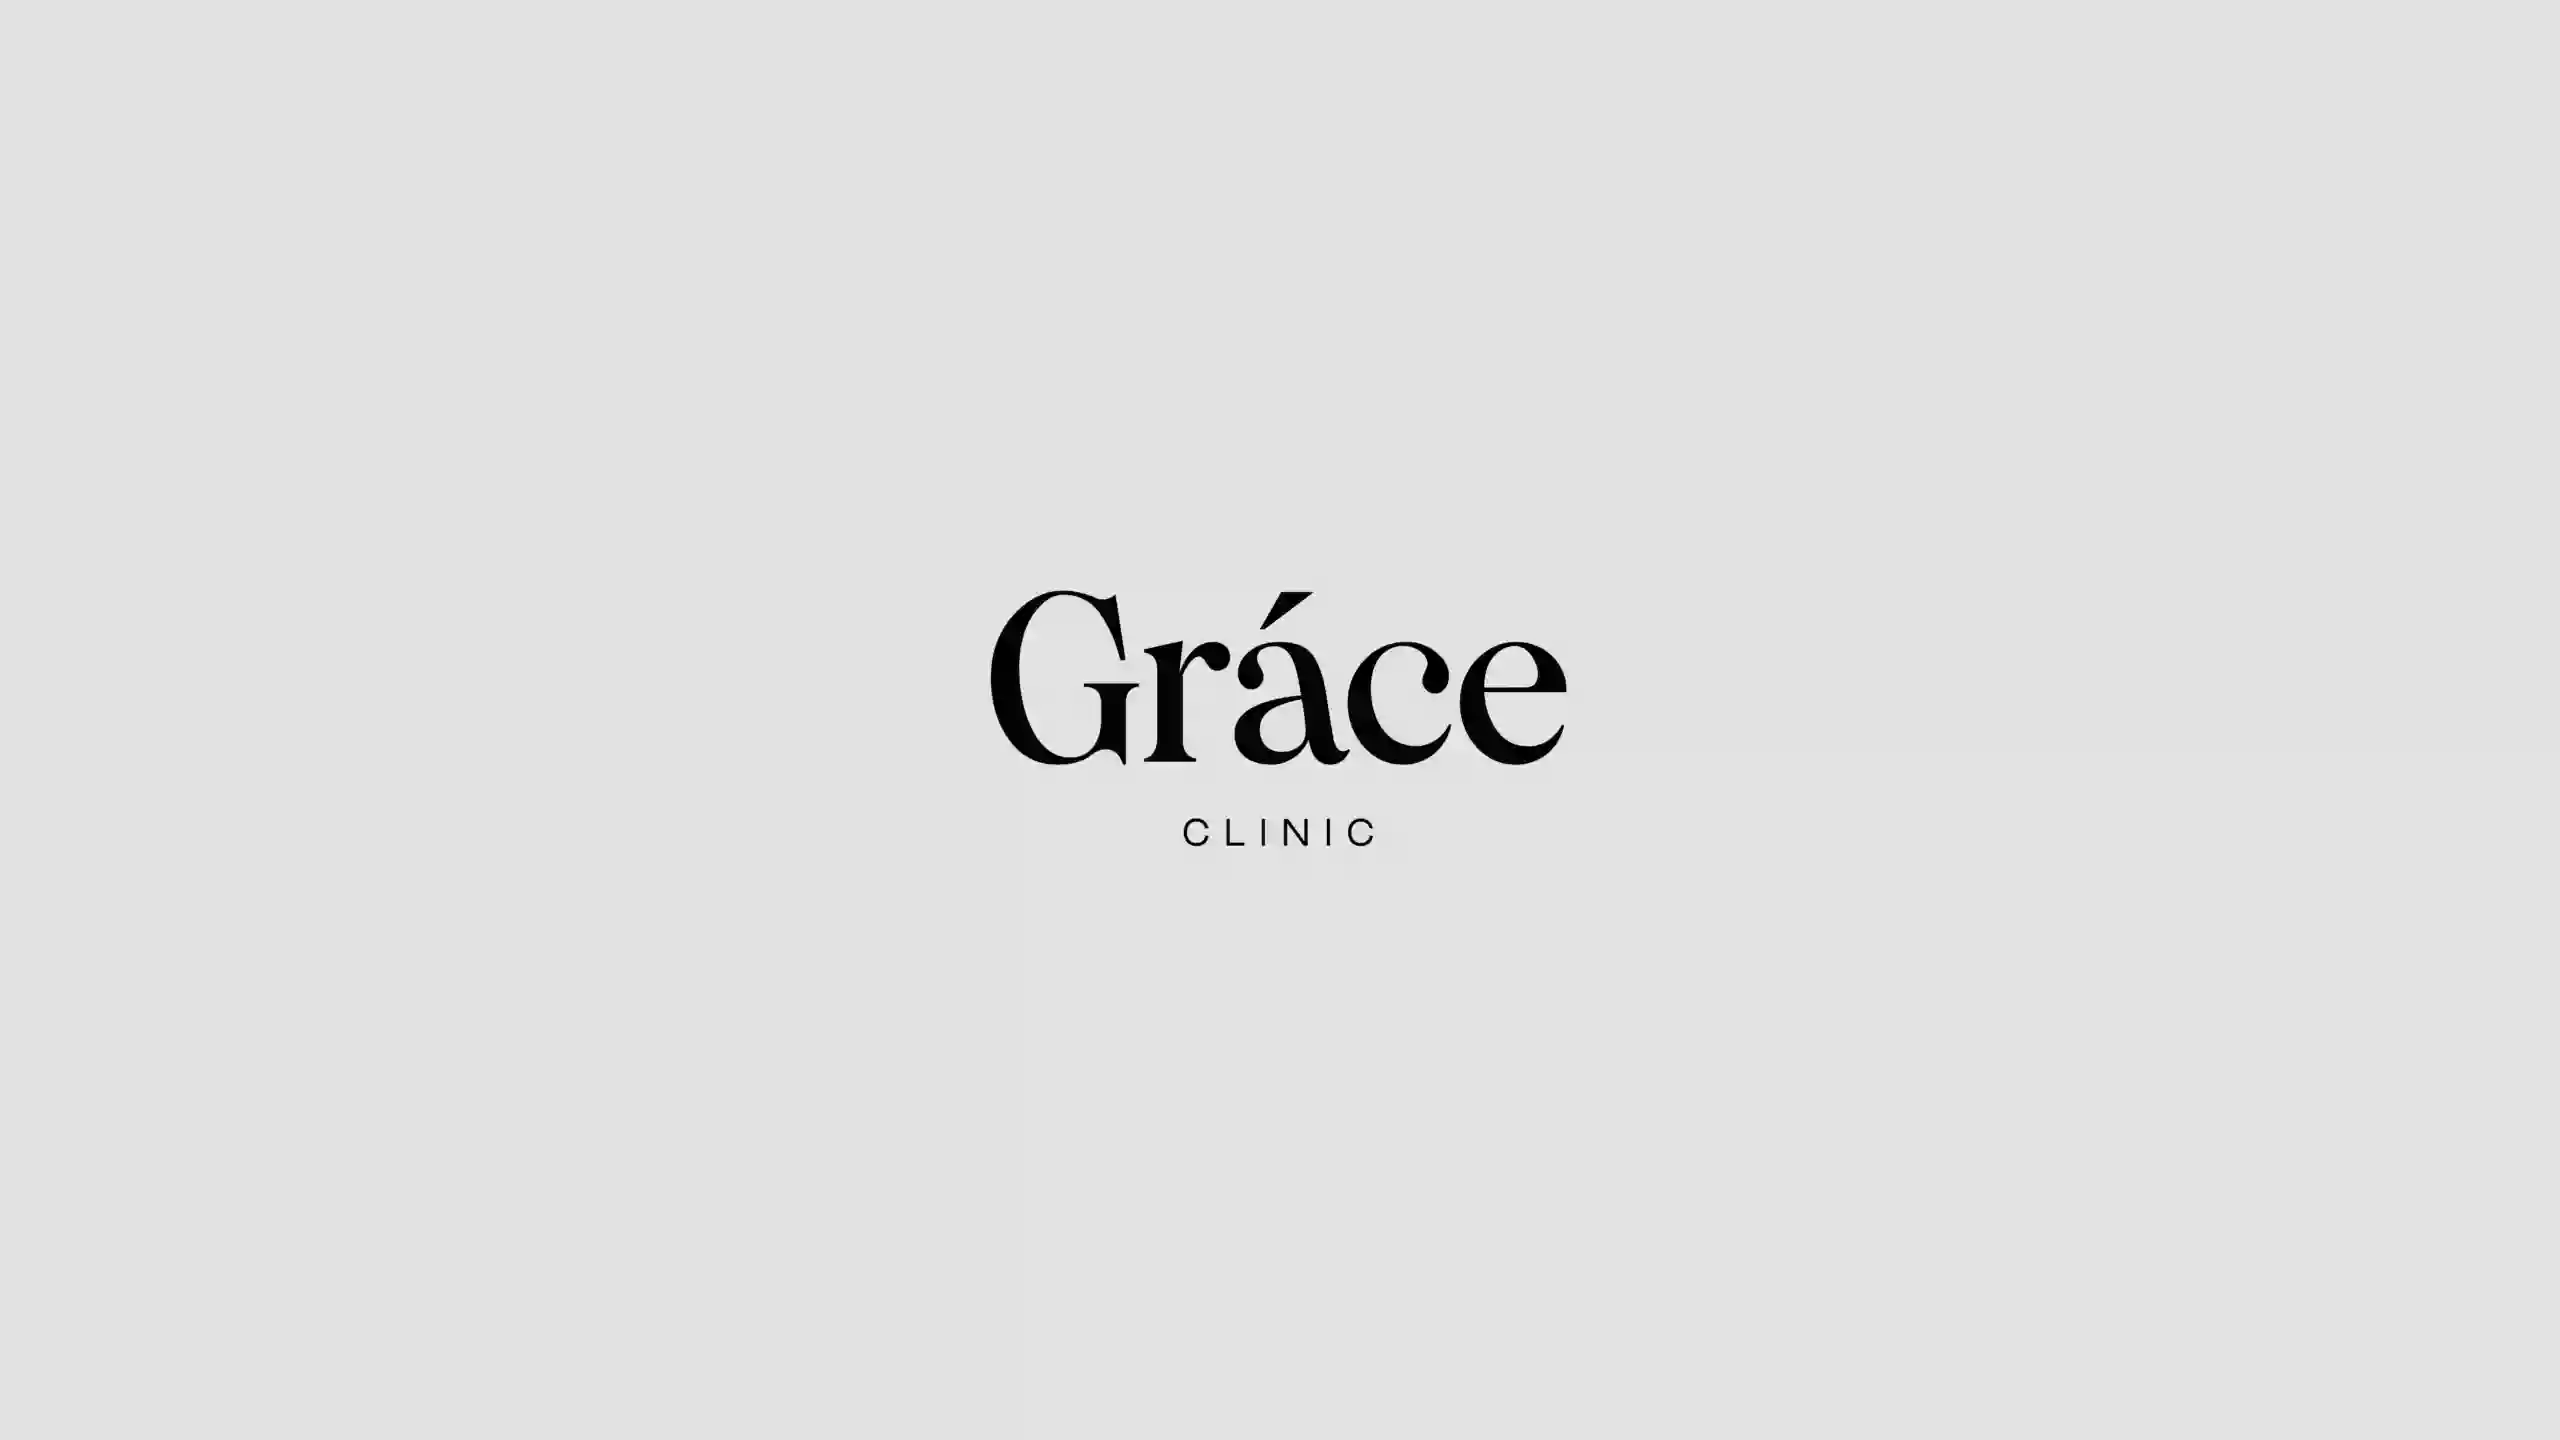 Grace - клініка краси та здоров'я | Клініка пластичної хірургії | Косметологія | Гінекологія | Урологія | Терапія